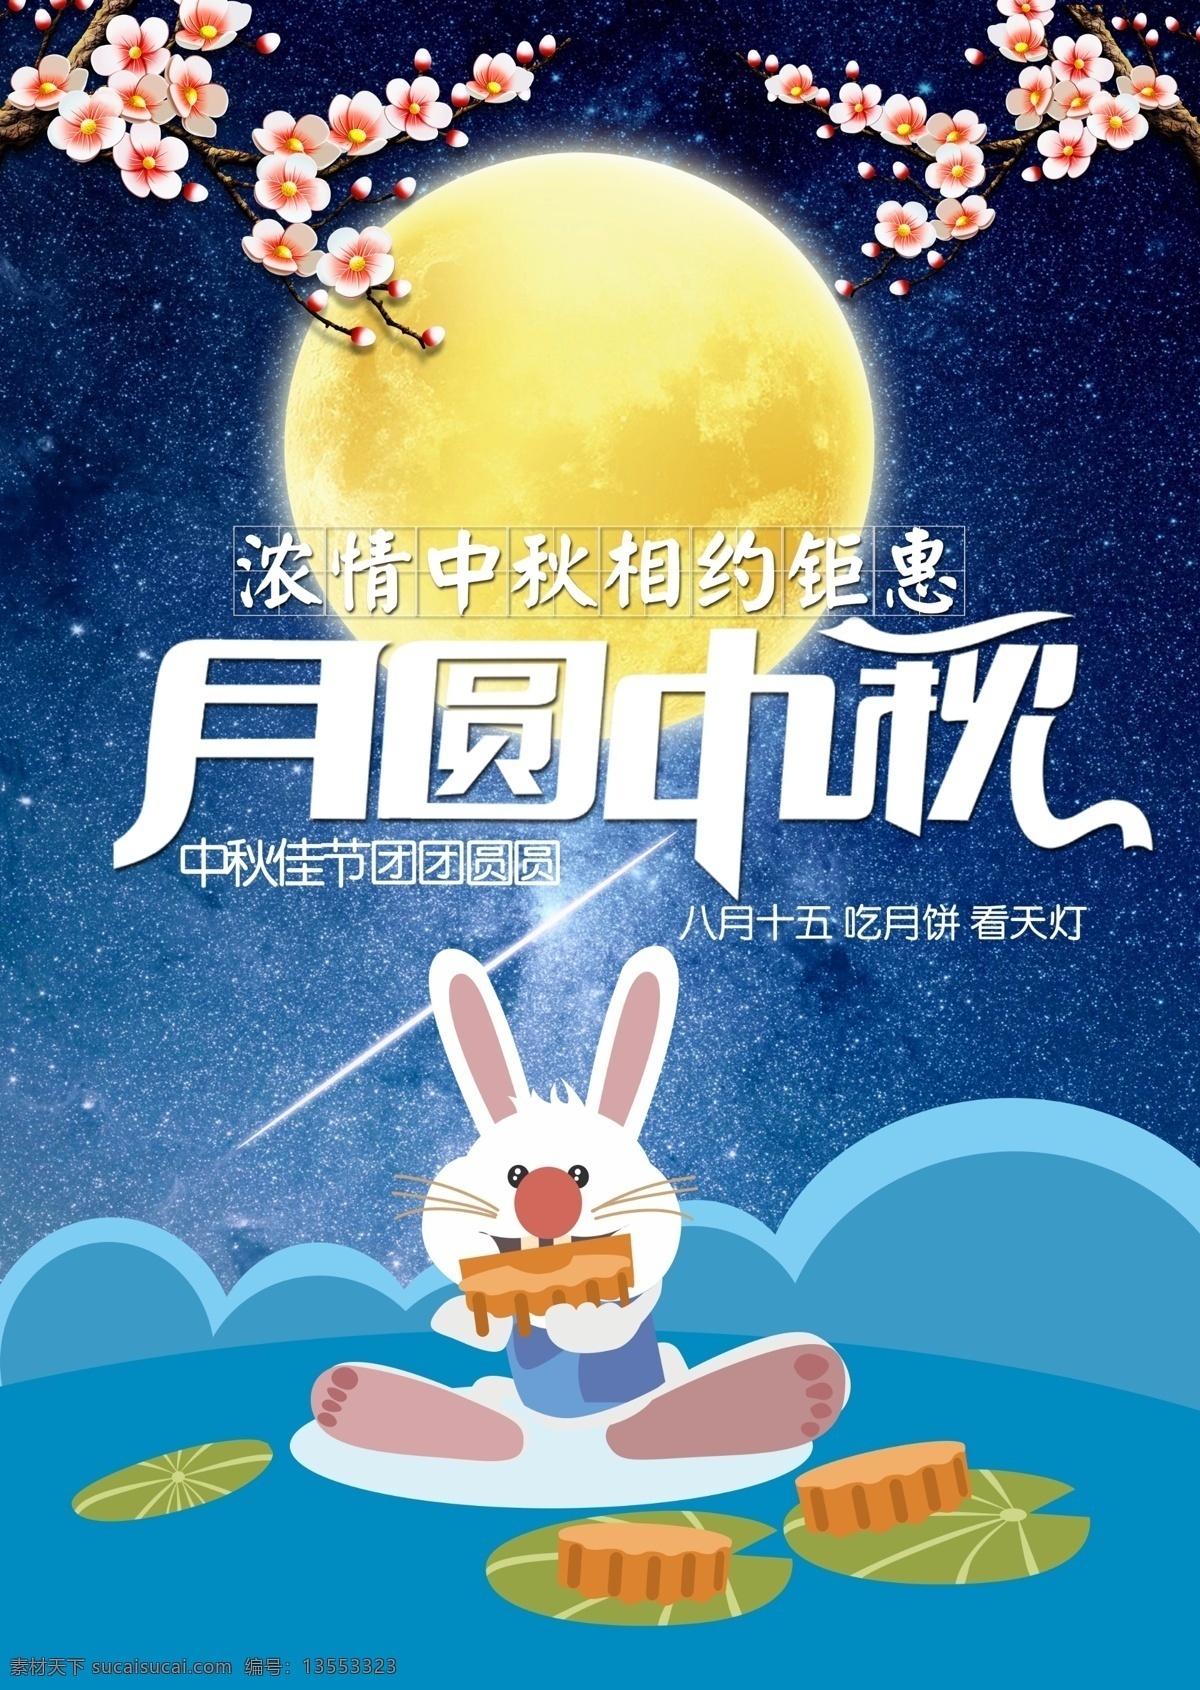 中秋节 月圆 中秋 宣传海报 兔子 月亮 月饼 嫦娥 吃月饼 八月十五 星空 梅花 吃